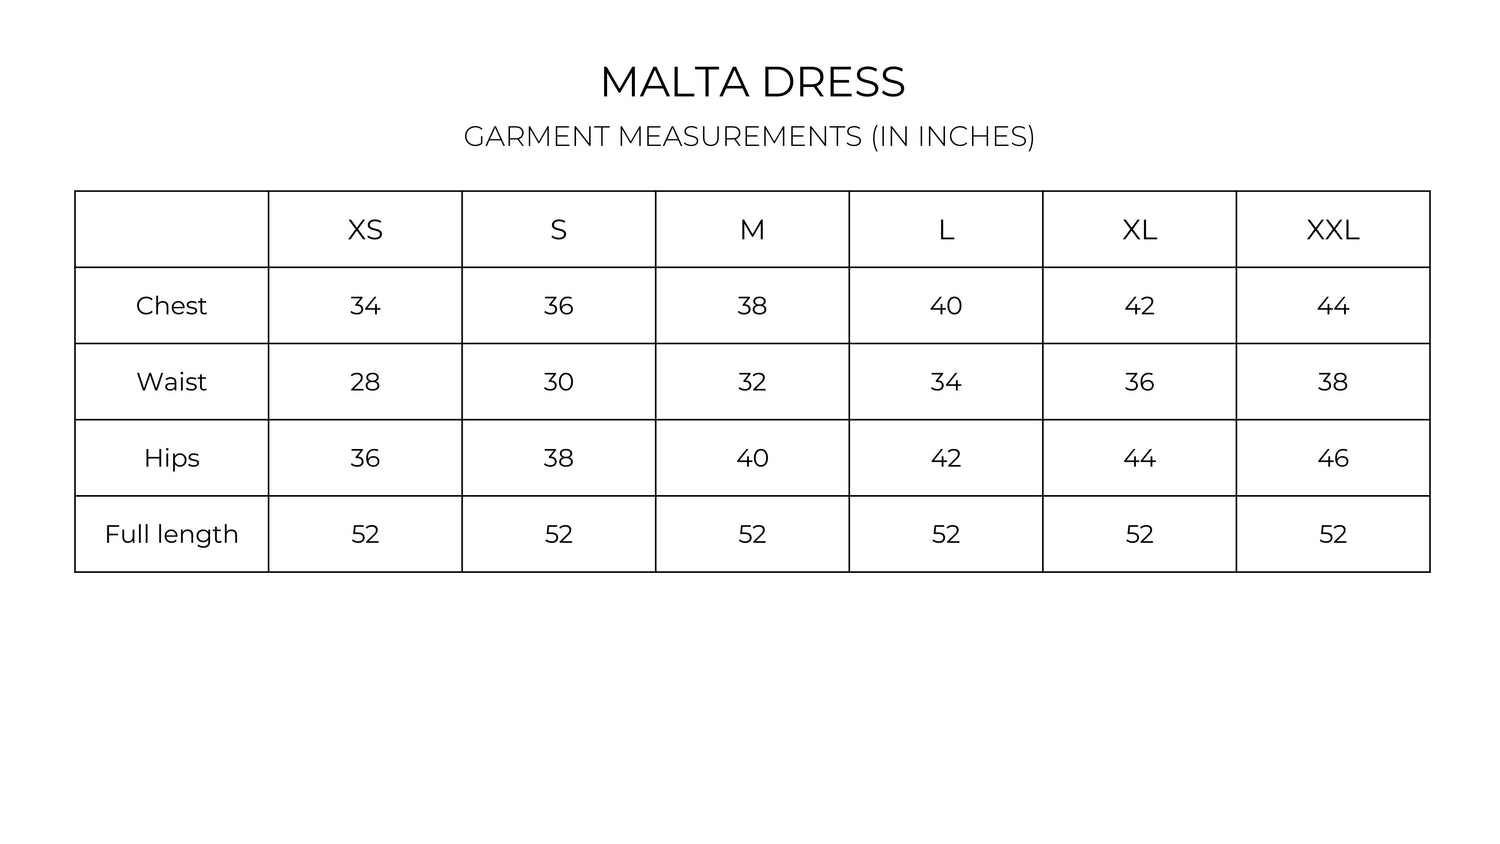 Malta Dress